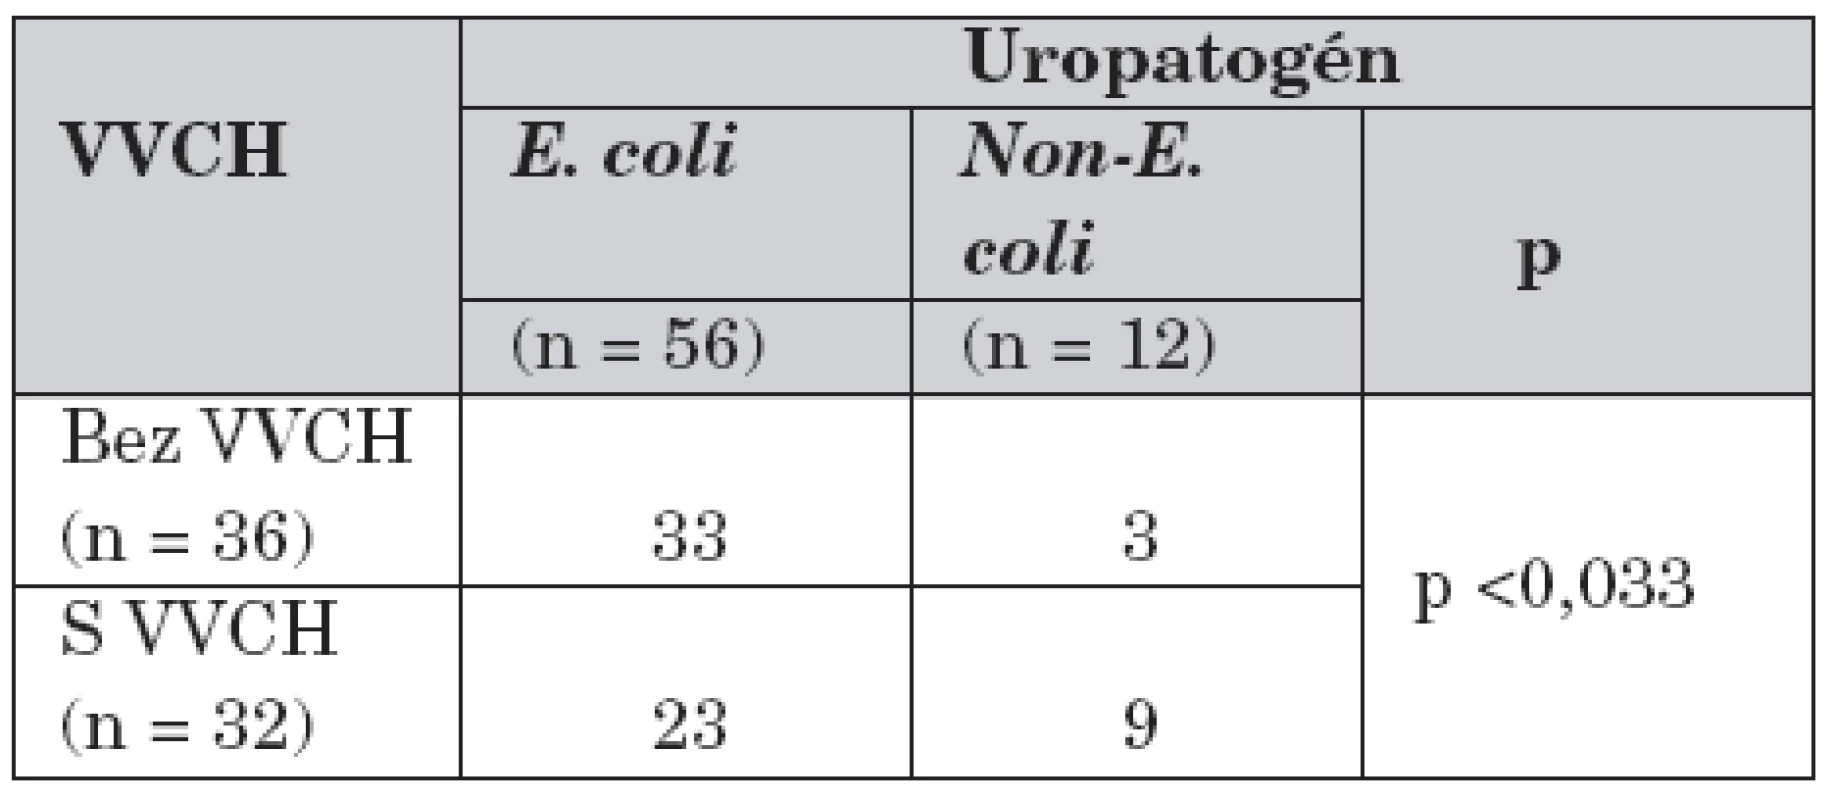 Výskyt pyelonefritíd spôsobených E. coli a non-E. colimikroorganizmami u pacientov s/bez VVCH uropoetického traktu.